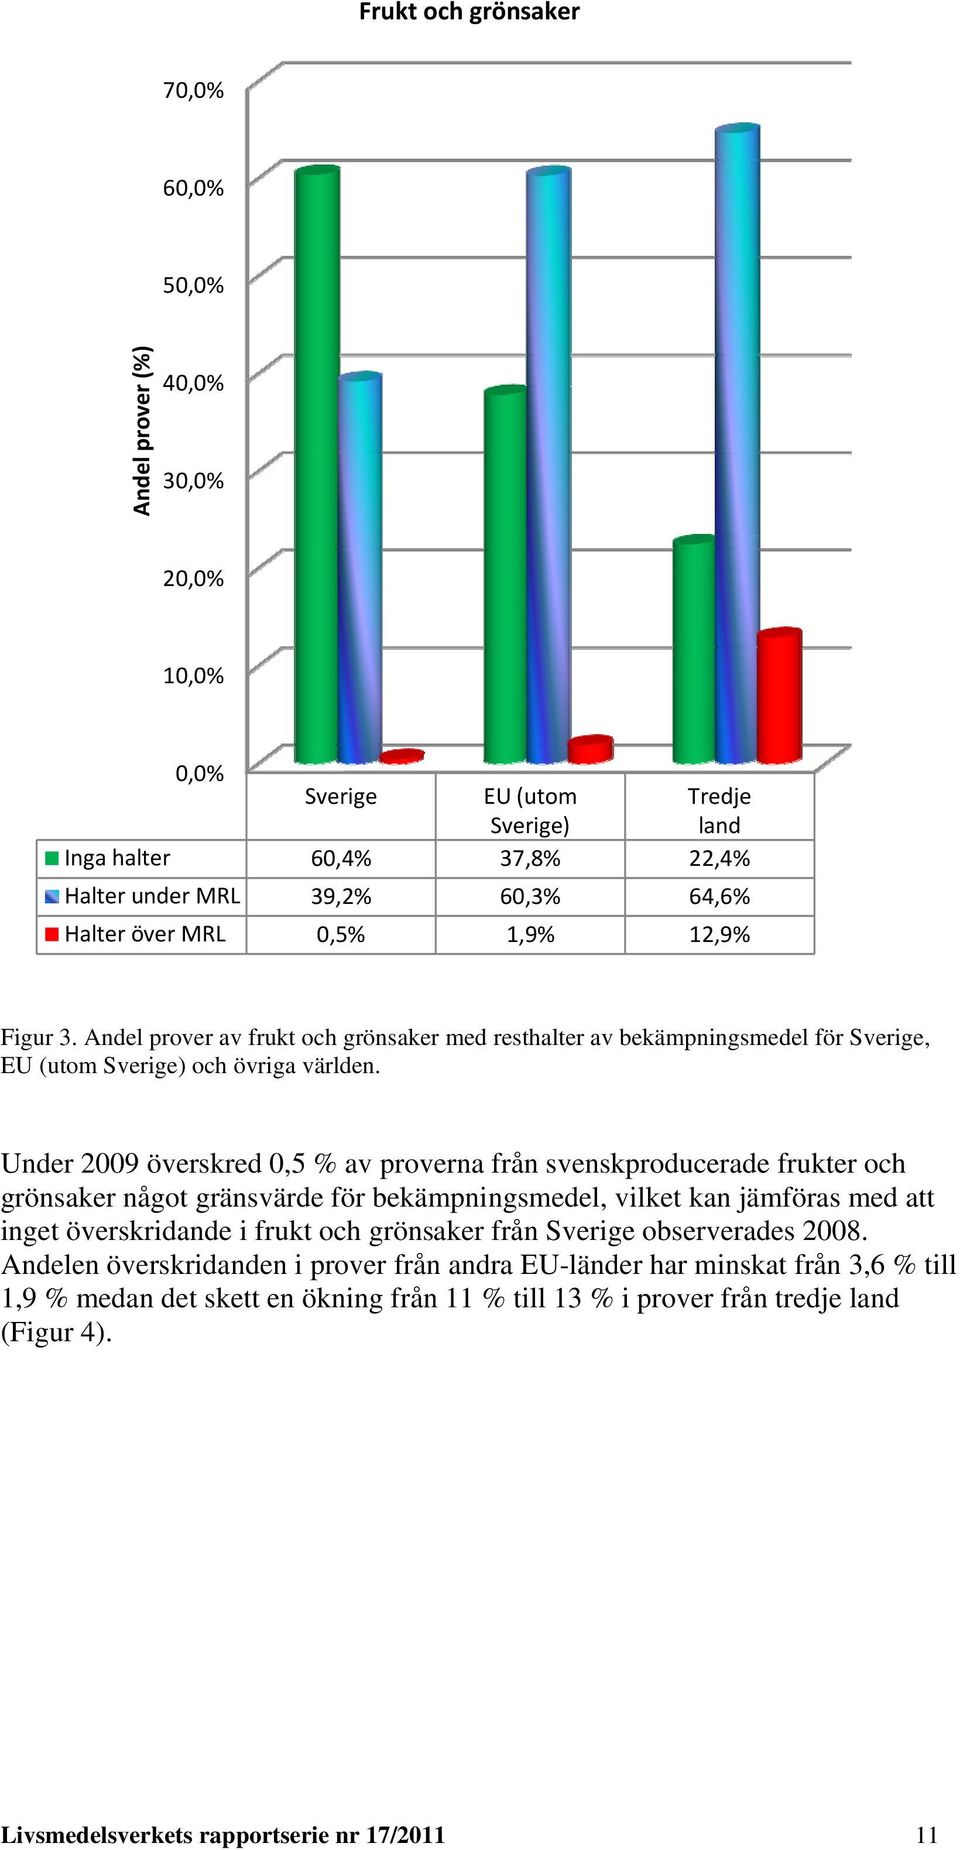 Under 2009 överskred 0,5 % av proverna från svenskproducerade frukter och grönsaker något gränsvärde för bekämpningsmedel, vilket kan jämföras med att inget överskridande i frukt och grönsaker från